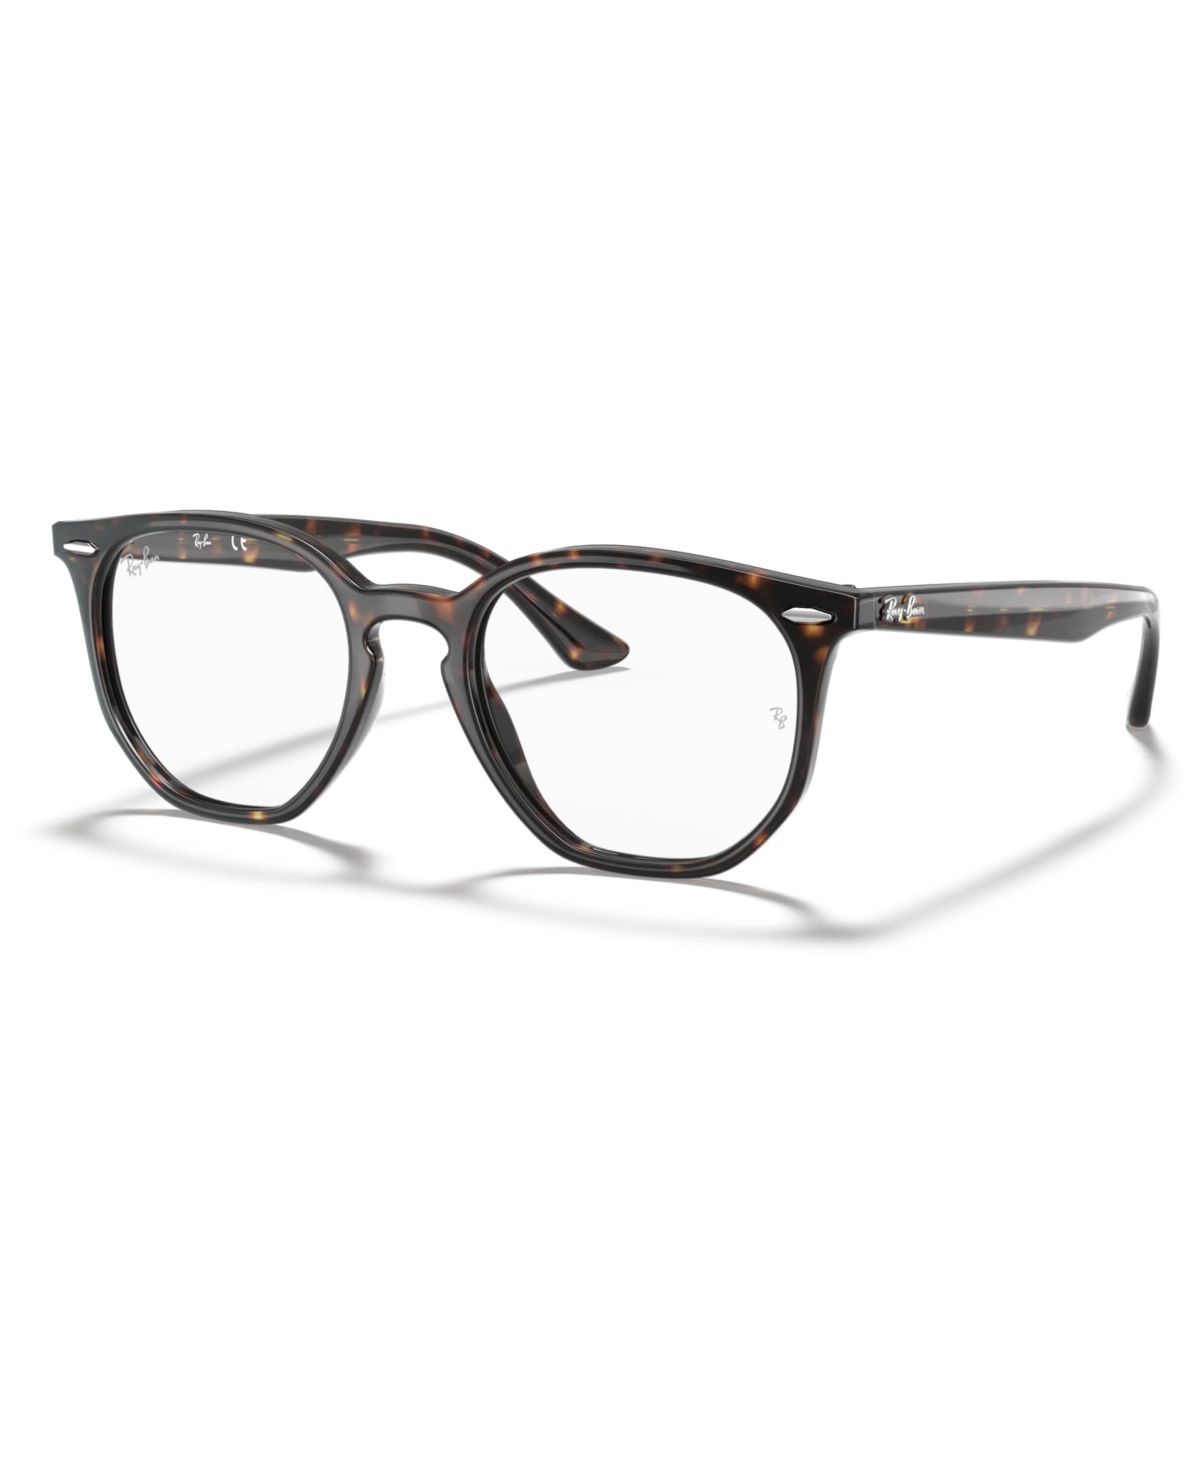 Unisex Eyeglasses, RB7151 - Havana